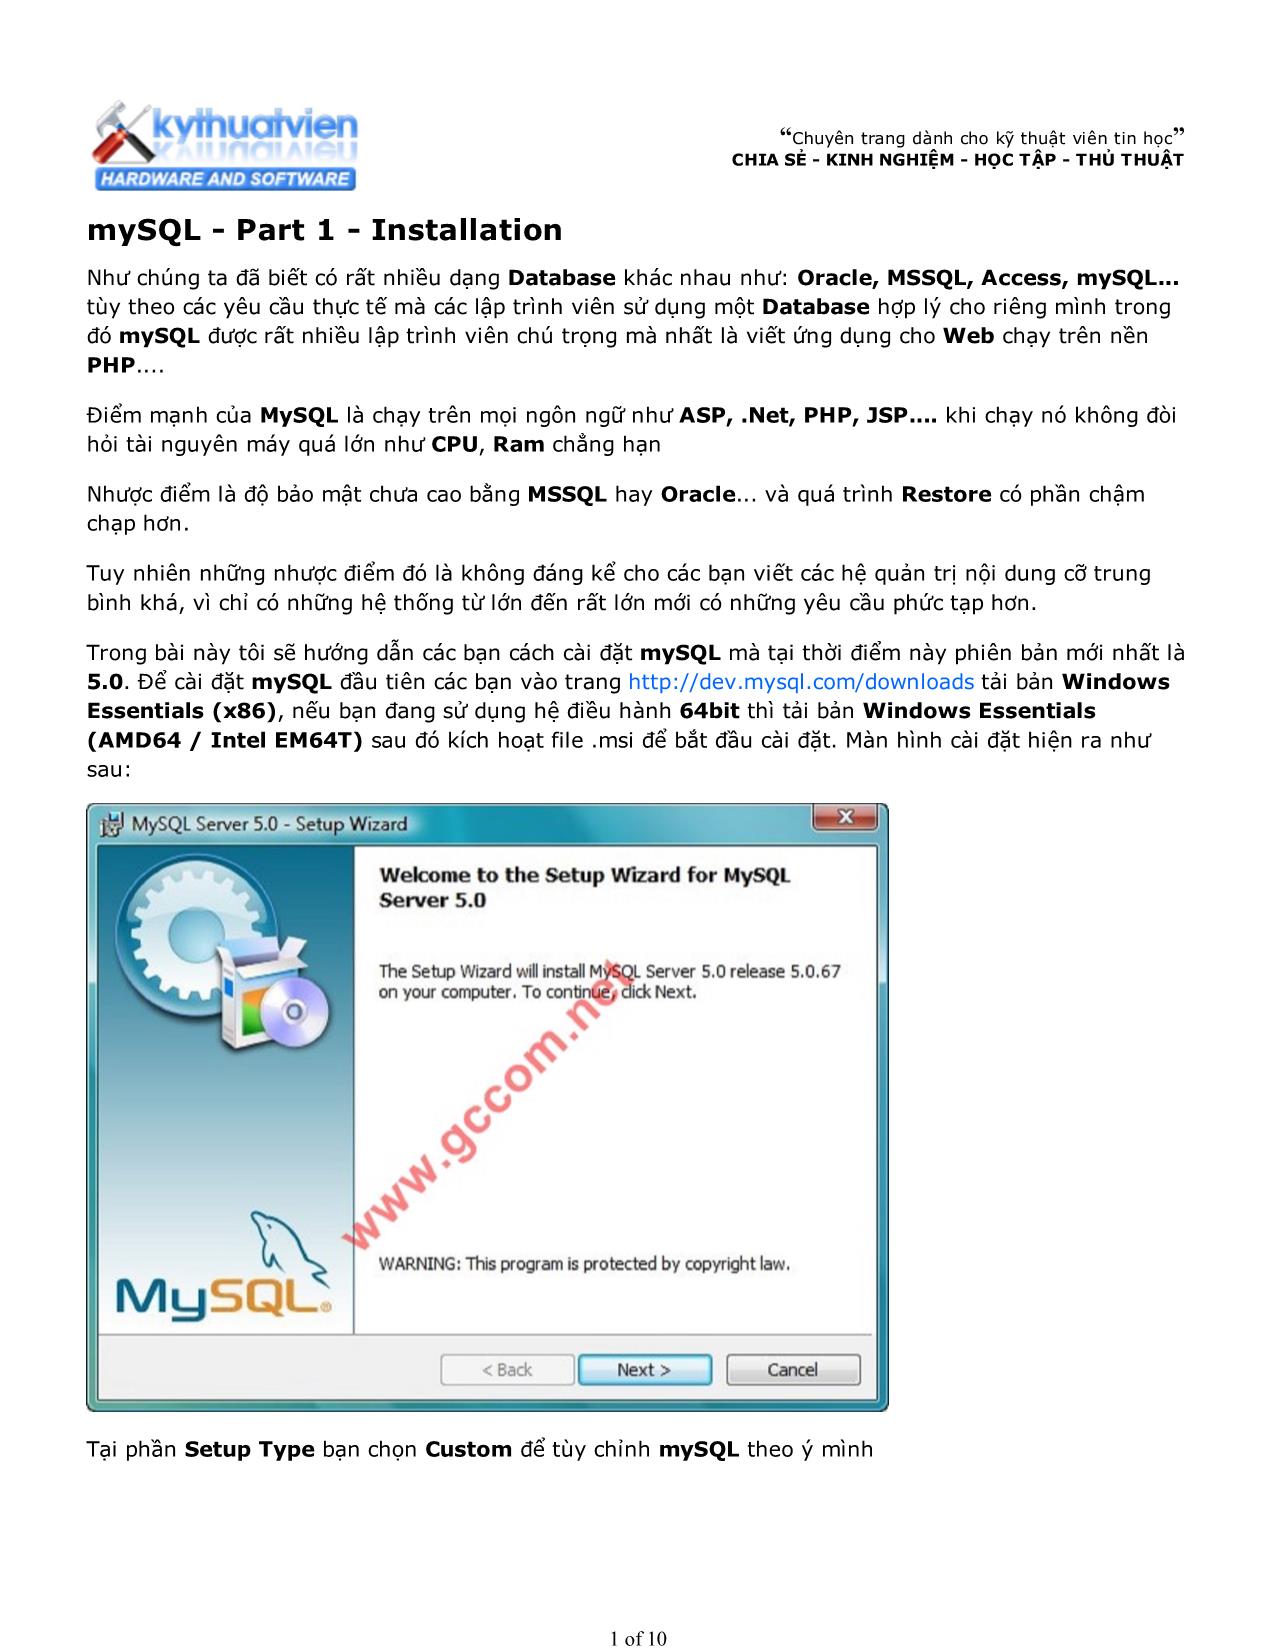 MySQL - Part 1: Installation trang 1